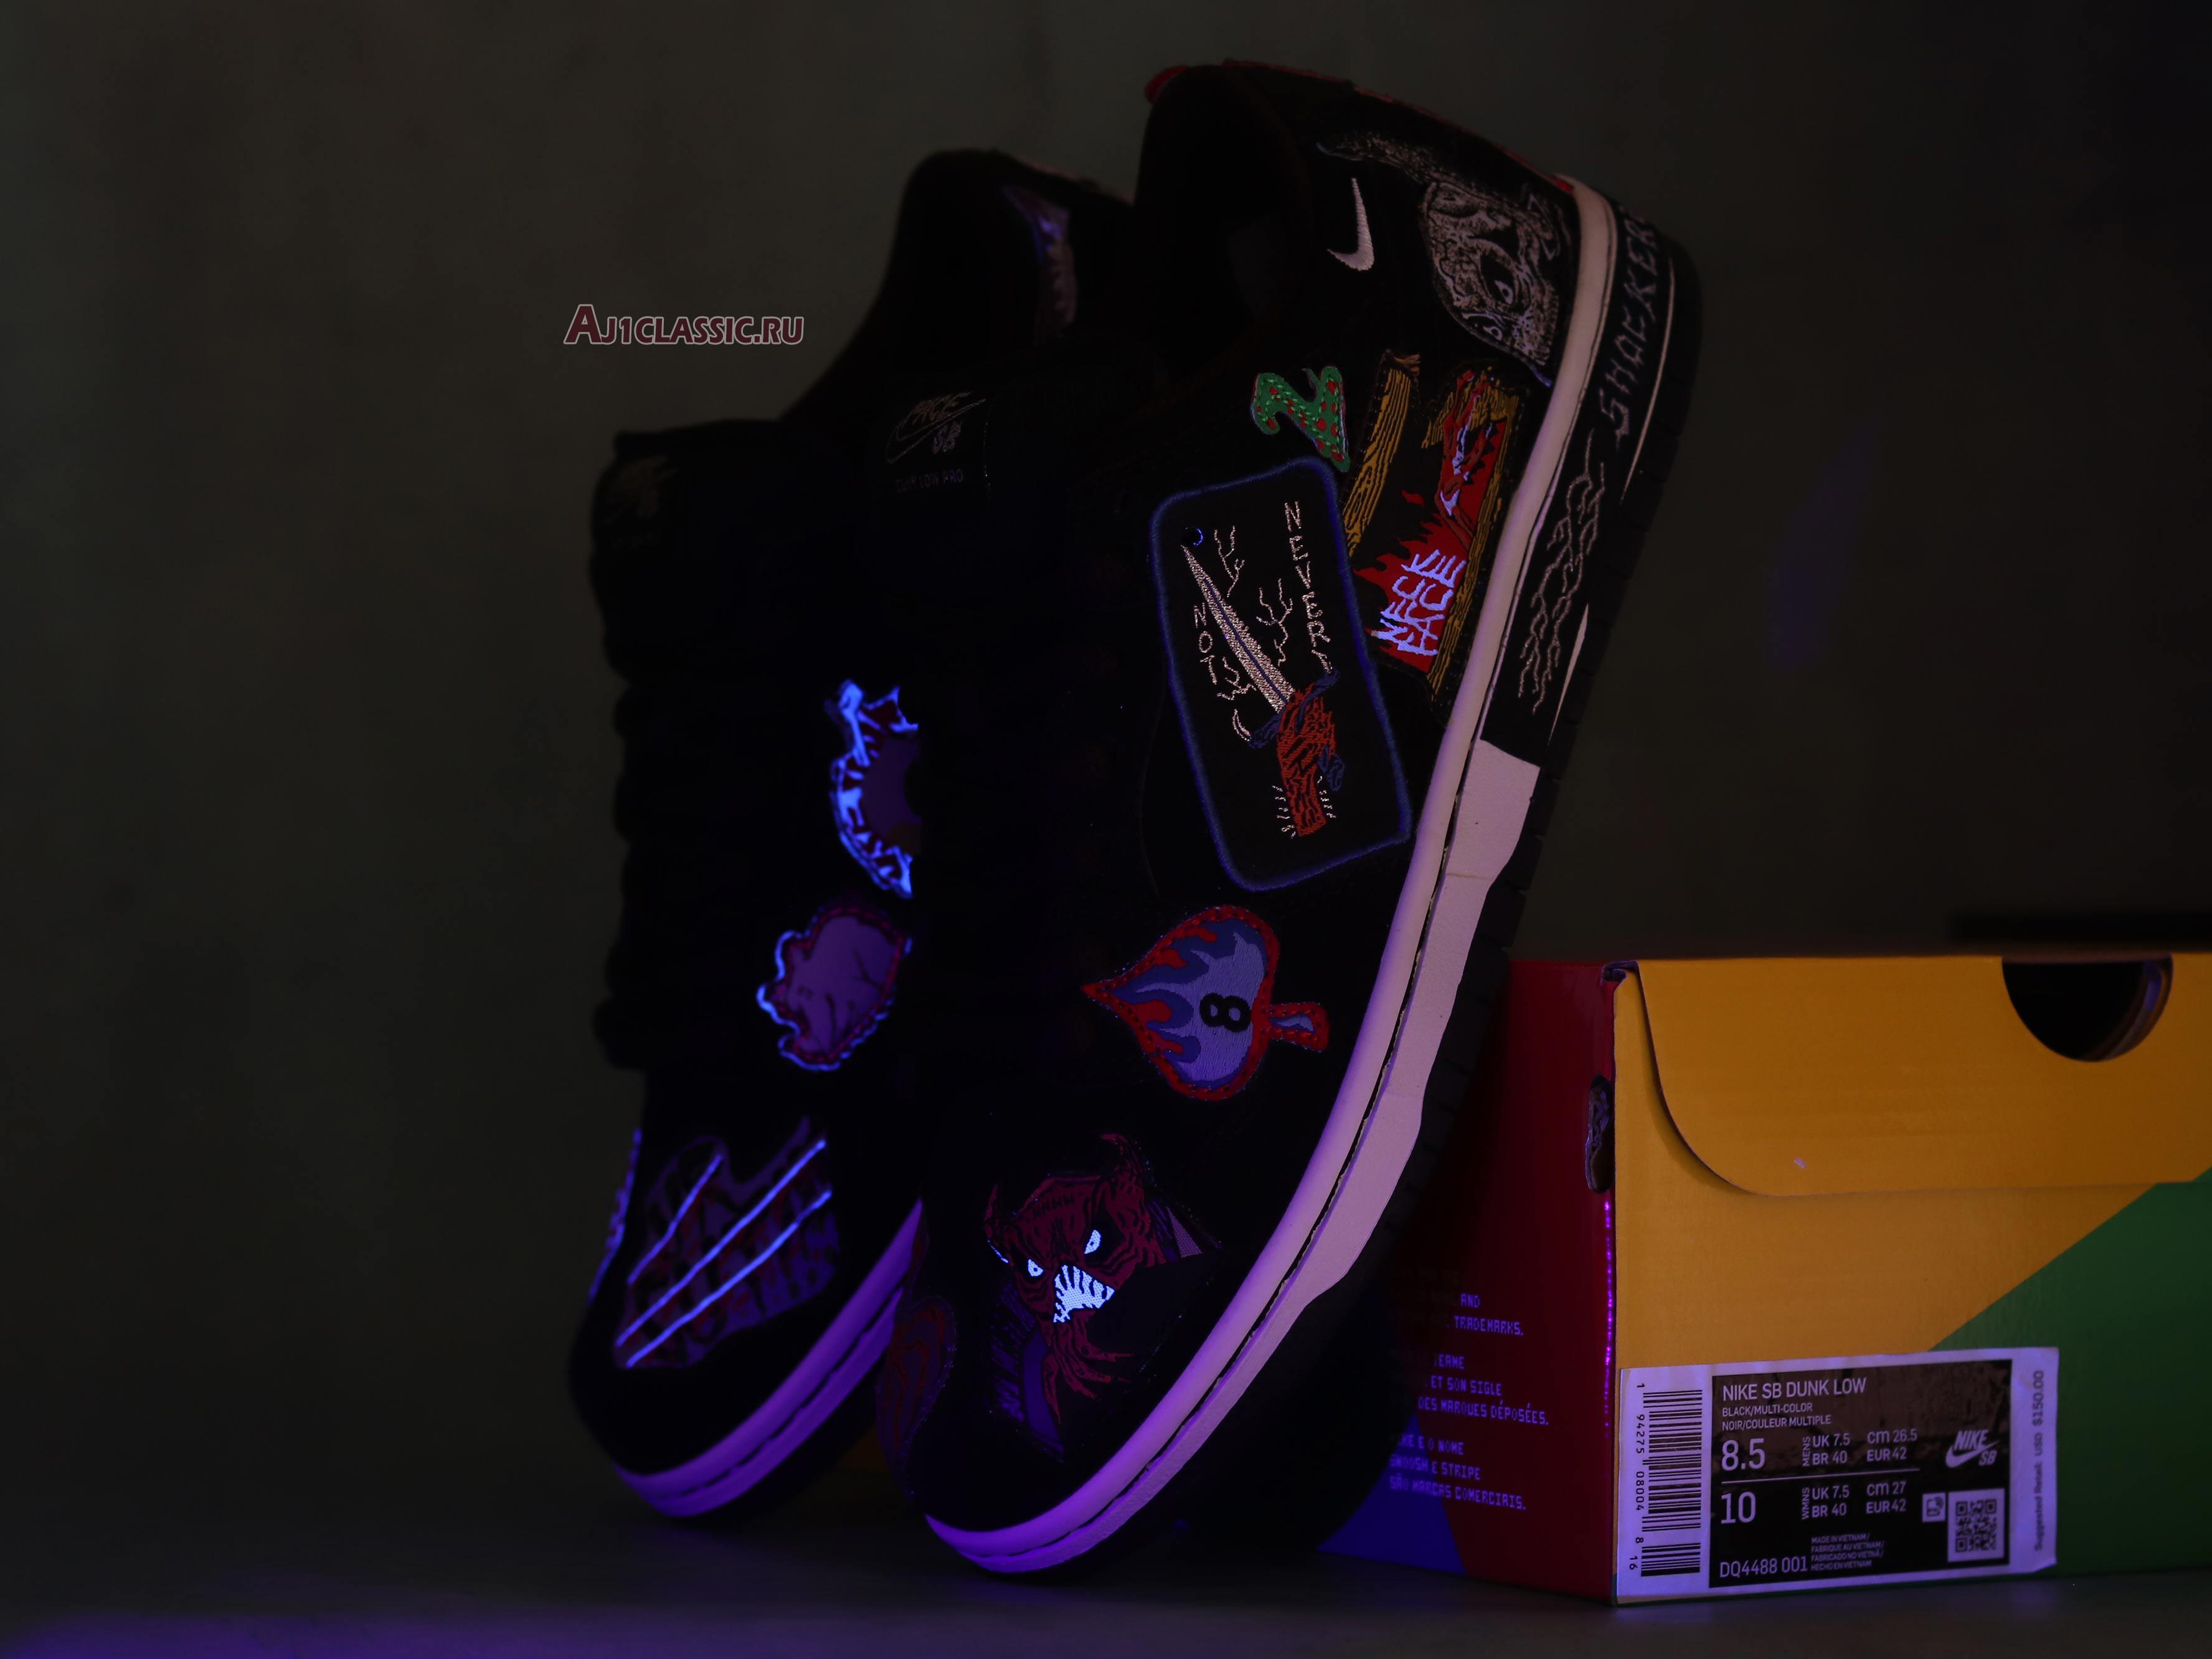 Neckface x Nike Dunk Low Pro SB Black DQ4488-001 Black/Multi-Color Sneakers